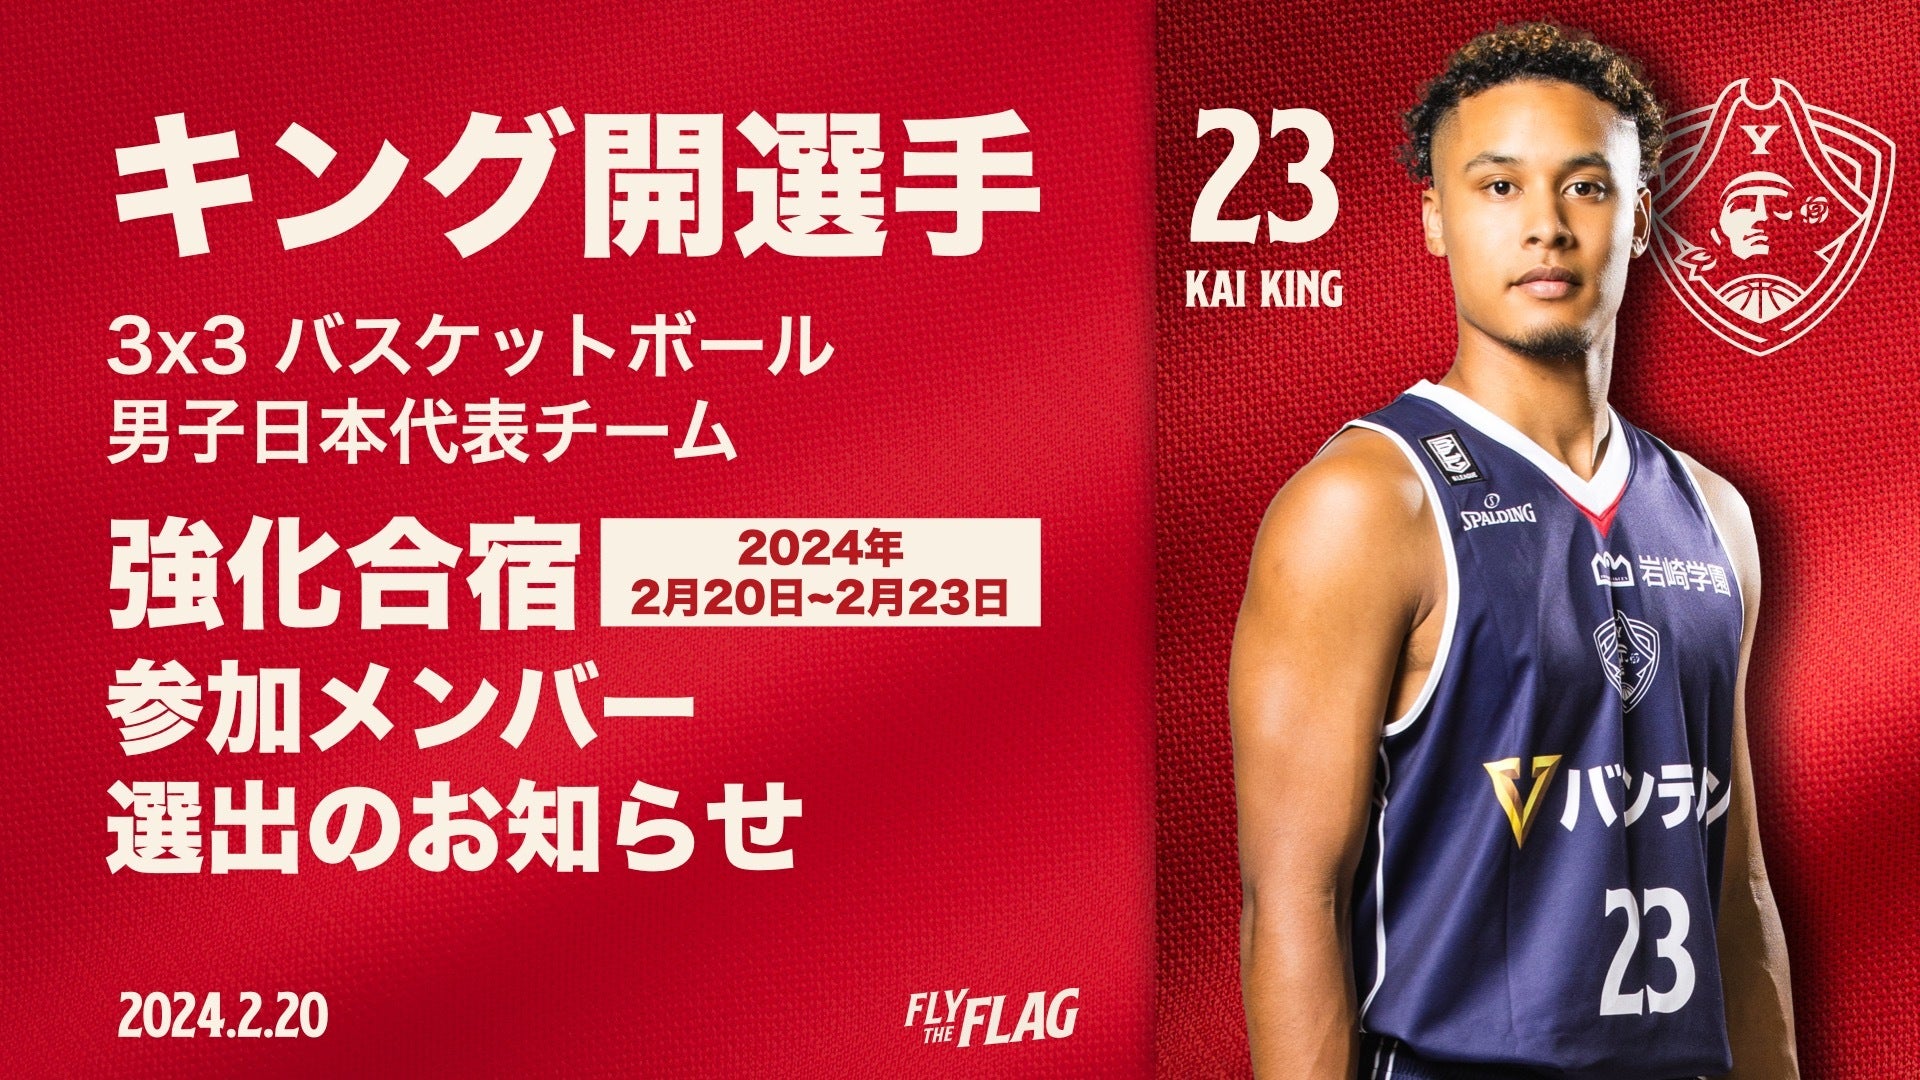 キング開選手 2023年度 3x3 バスケットボール男子日本代表チーム 強化合宿参加メンバー選出